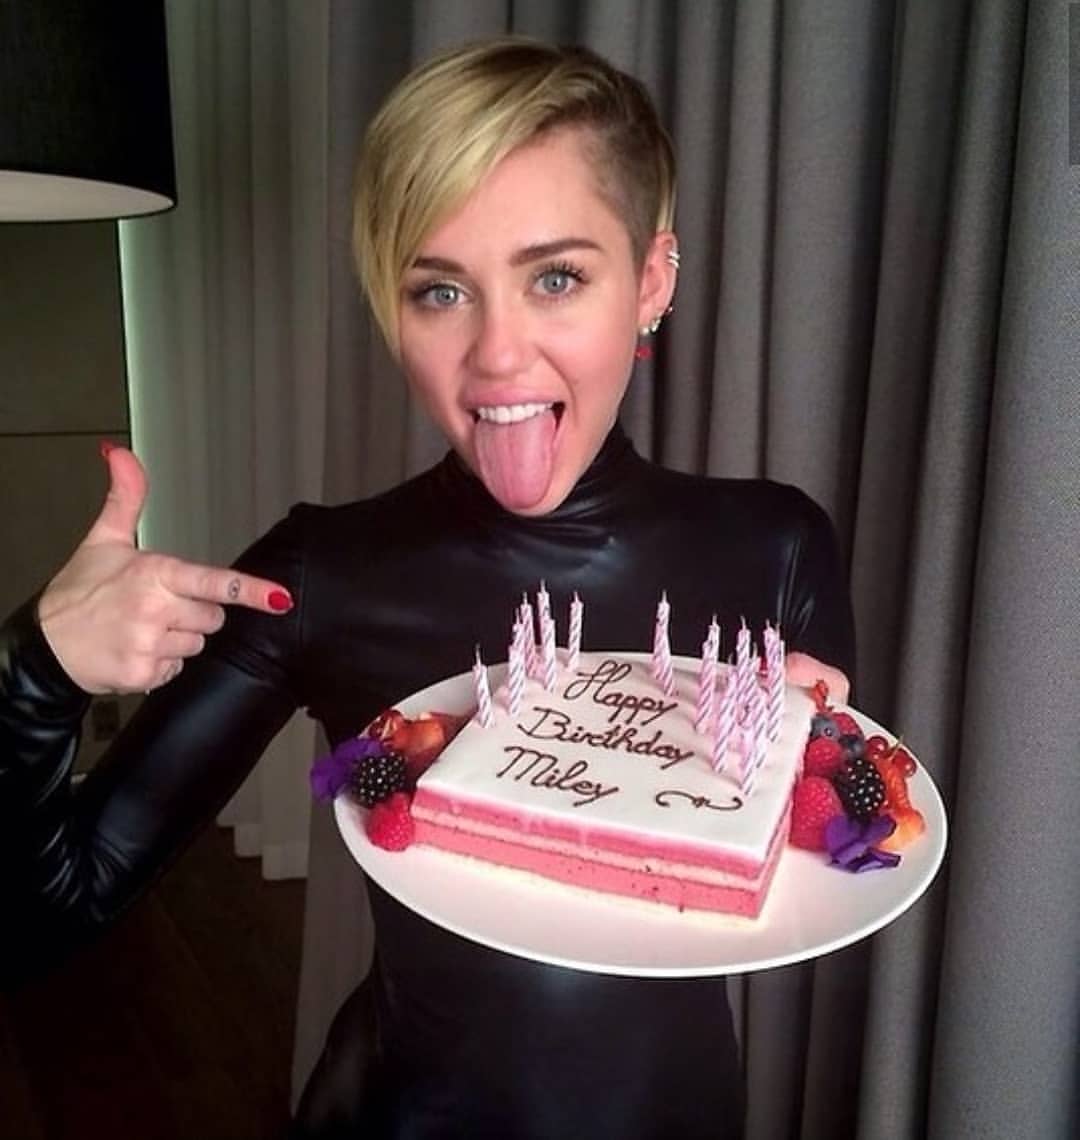 Miley Cyrus împlinește astăzi 26 de ani. Uite 12 lucruri pe care probabil nu le știai despre ea!